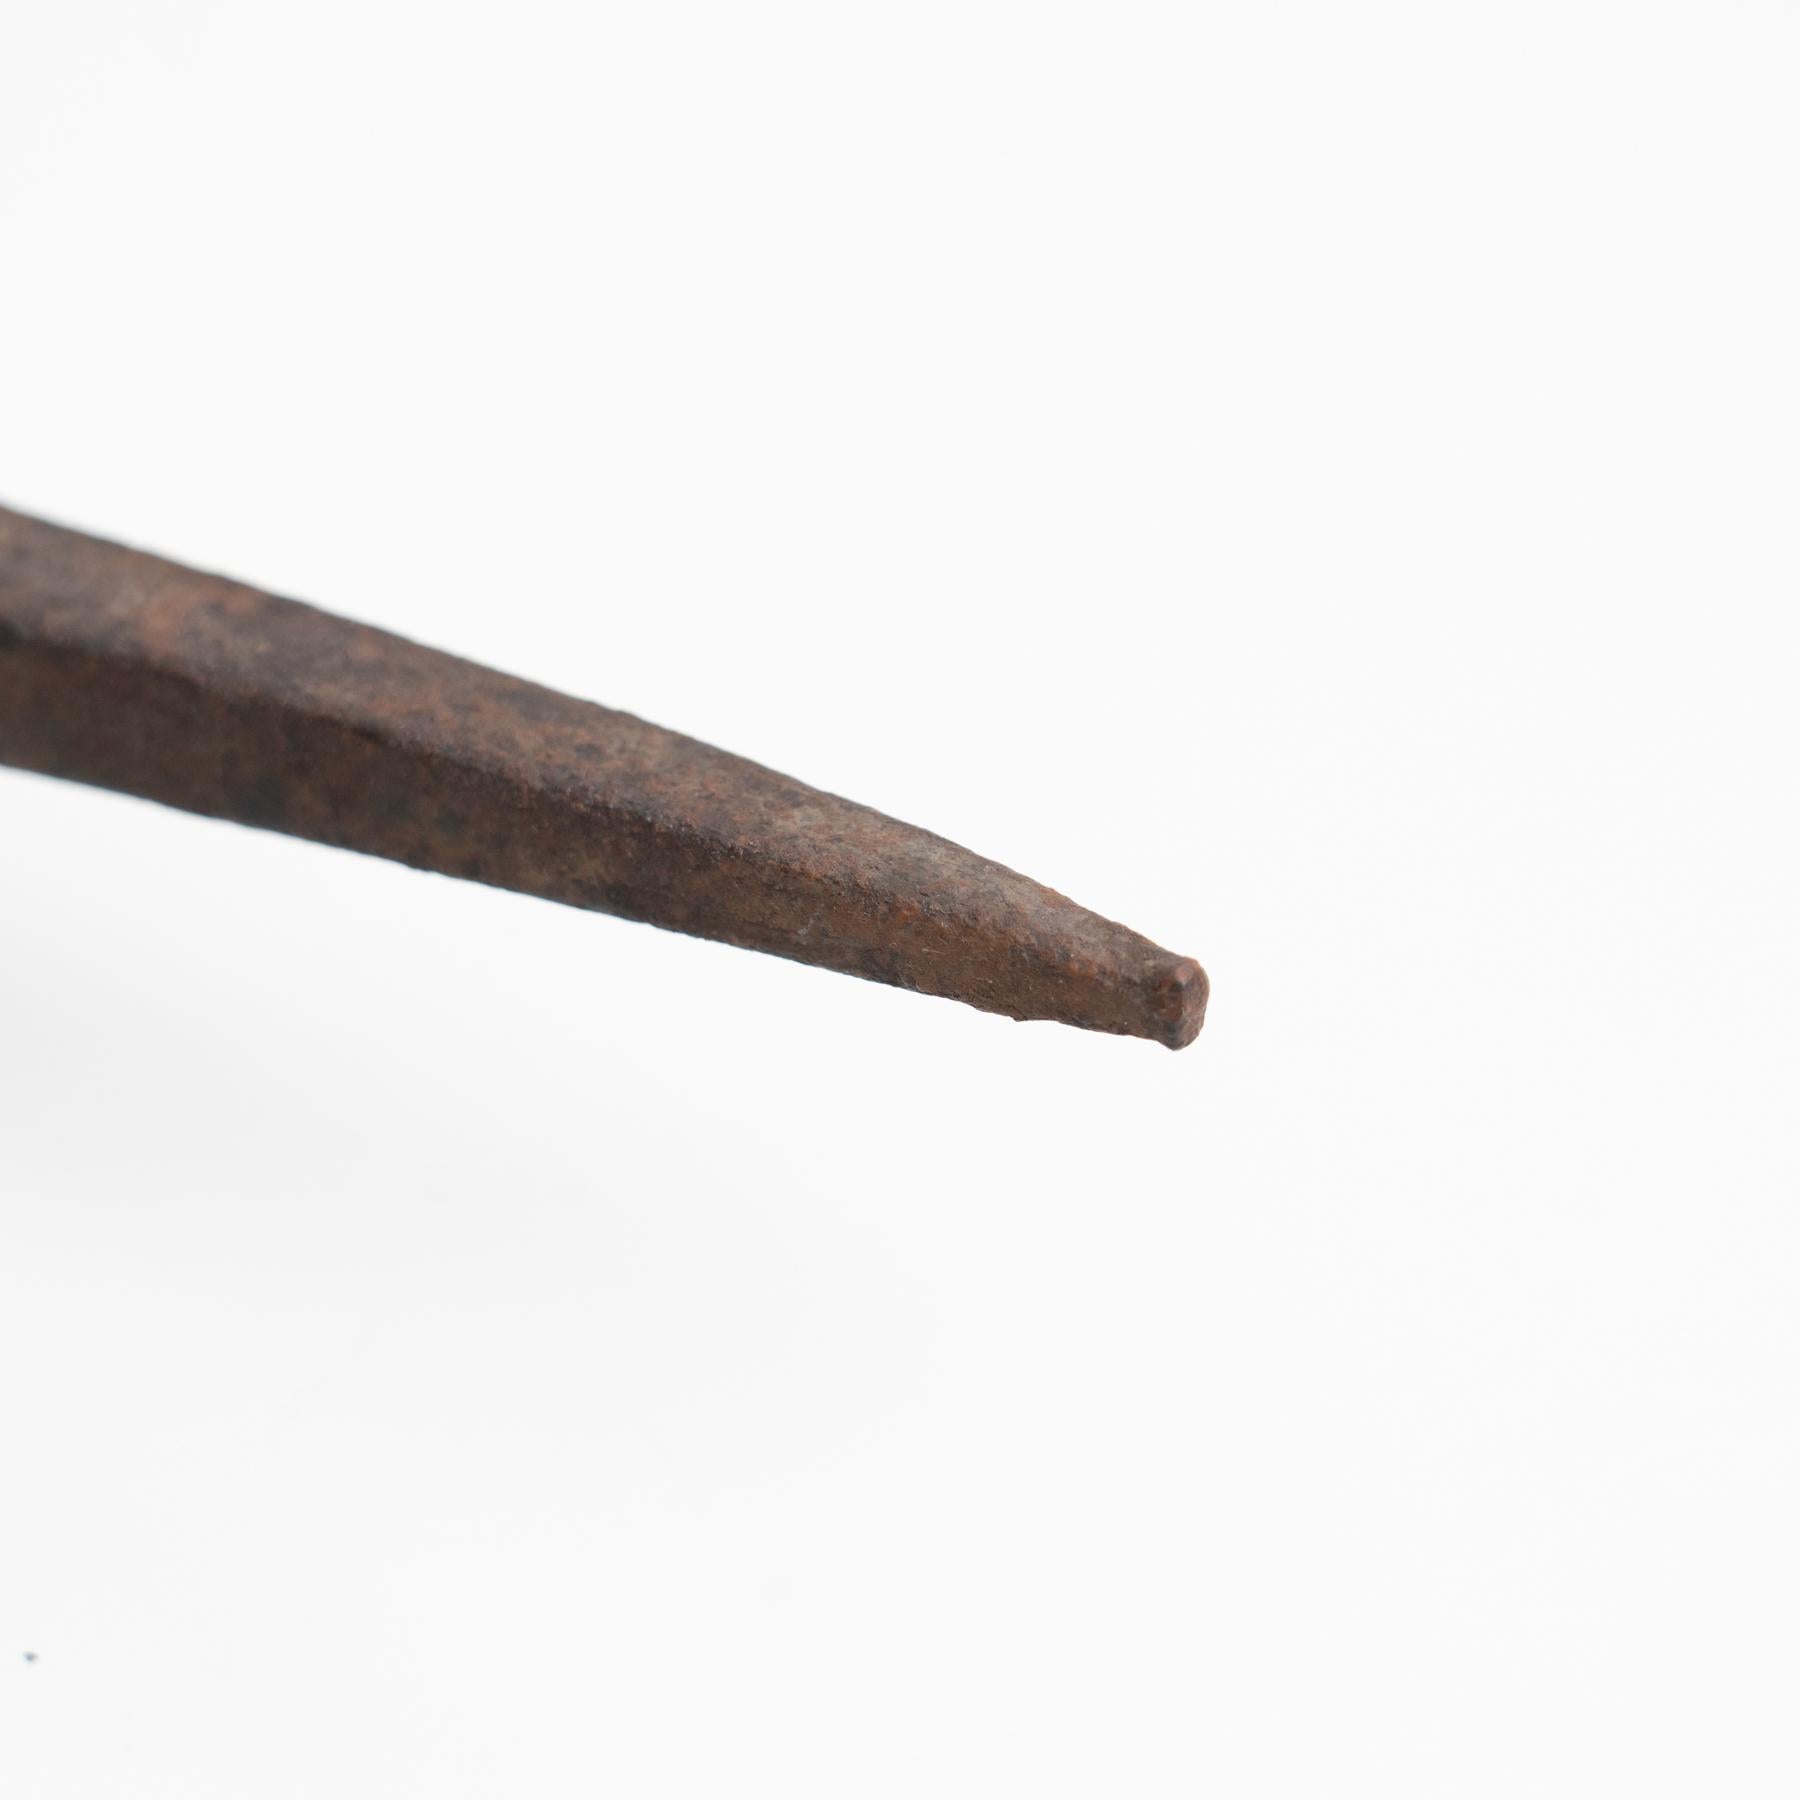 19th century pencil sharpener